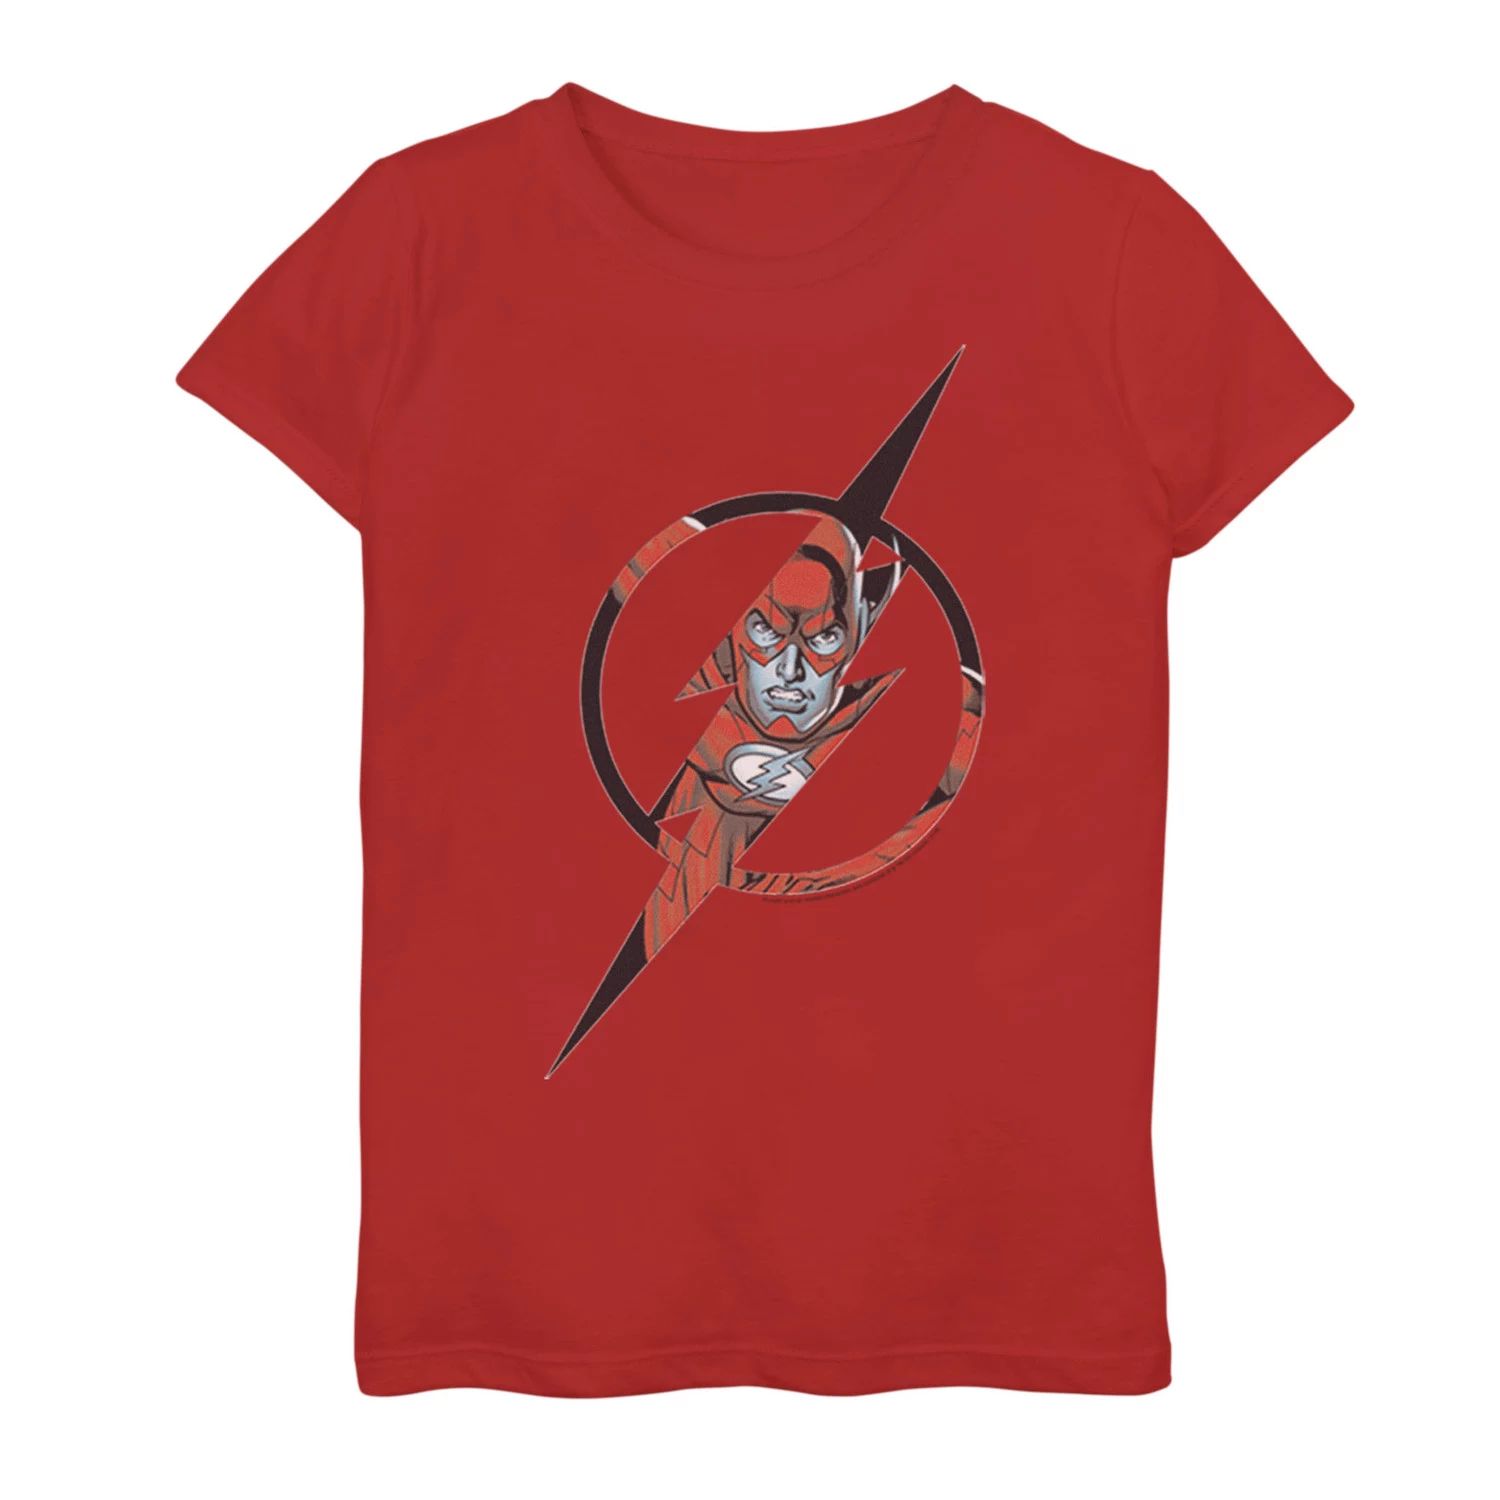 Футболка с графическим рисунком и логотипом DC Comics для девочек 7–16 лет DC Comics футболка с геометрическим плакатом и графическим рисунком dc comics для девочек 7–16 лет с бэтменом dc comics